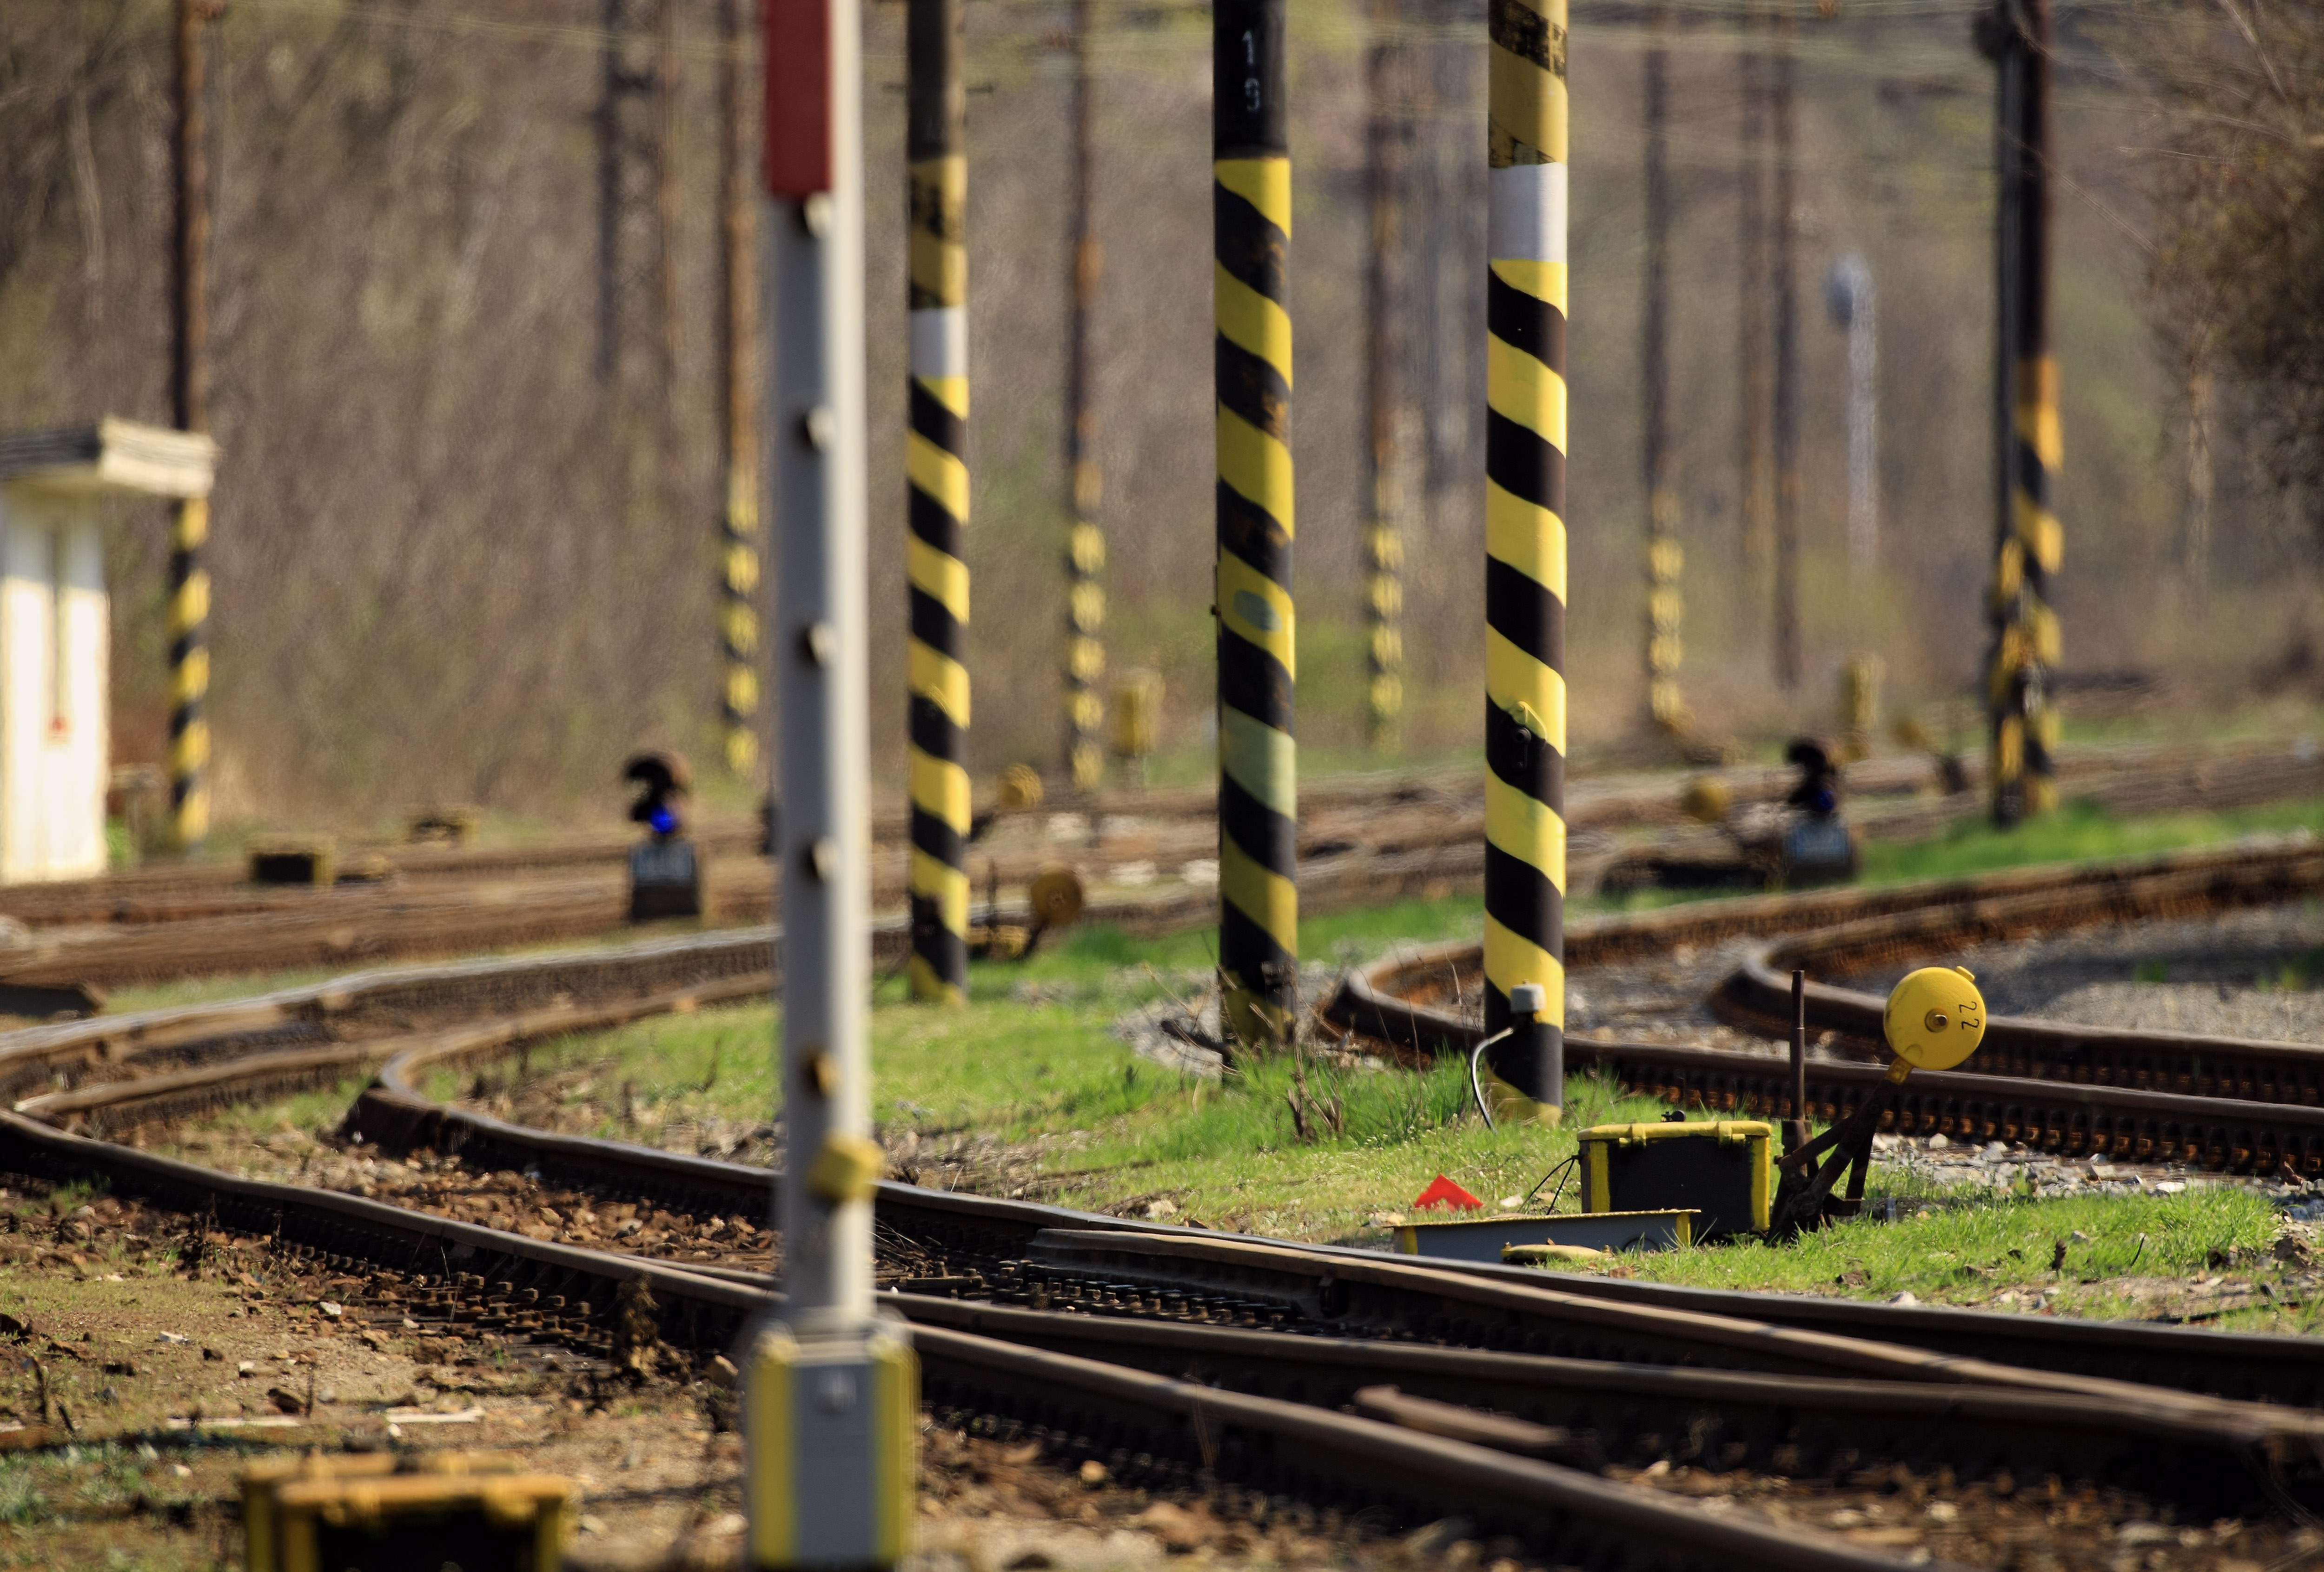 Začíná rekonstrukce tratě z Křižanova do Skleného nad Oslavou 